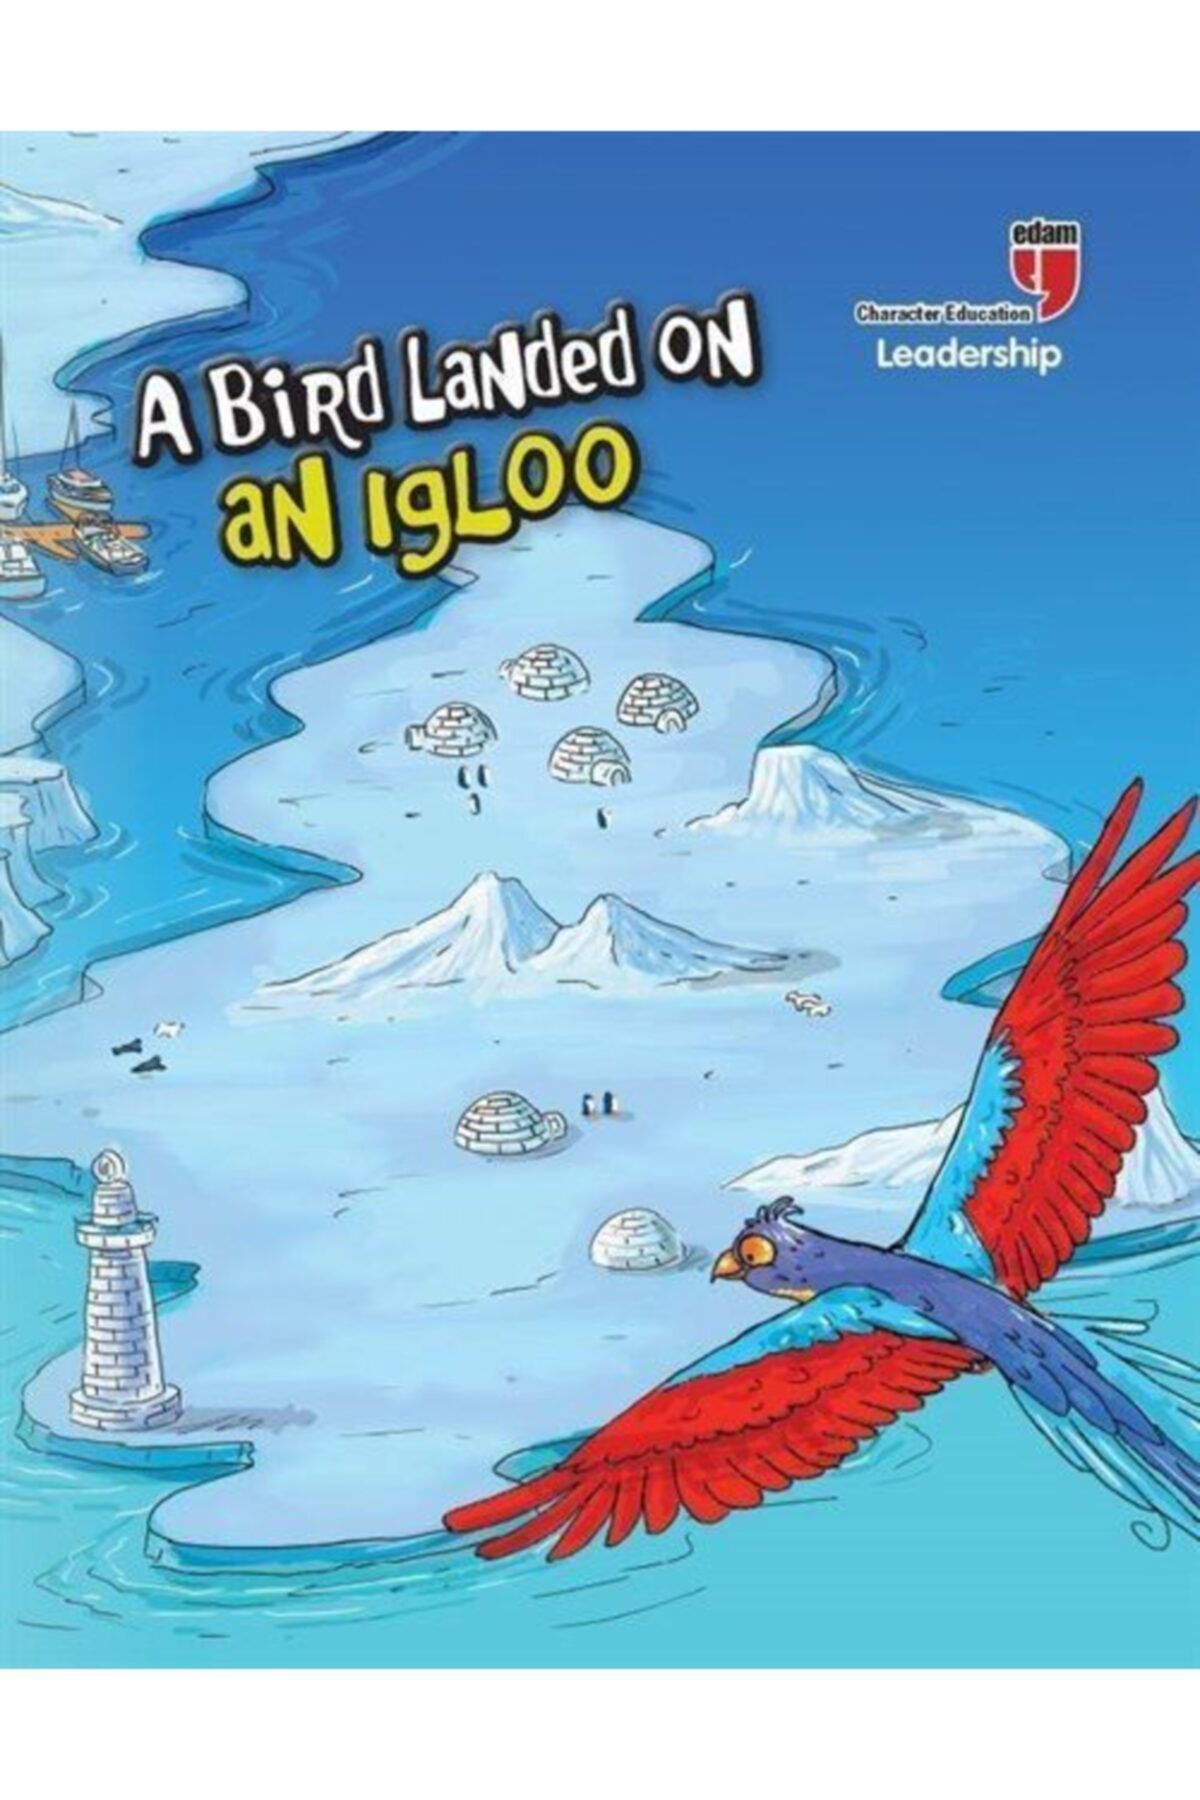 Edam Yayınları A Bird Landed On An Igloo - Leadership - Neriman Karatekin